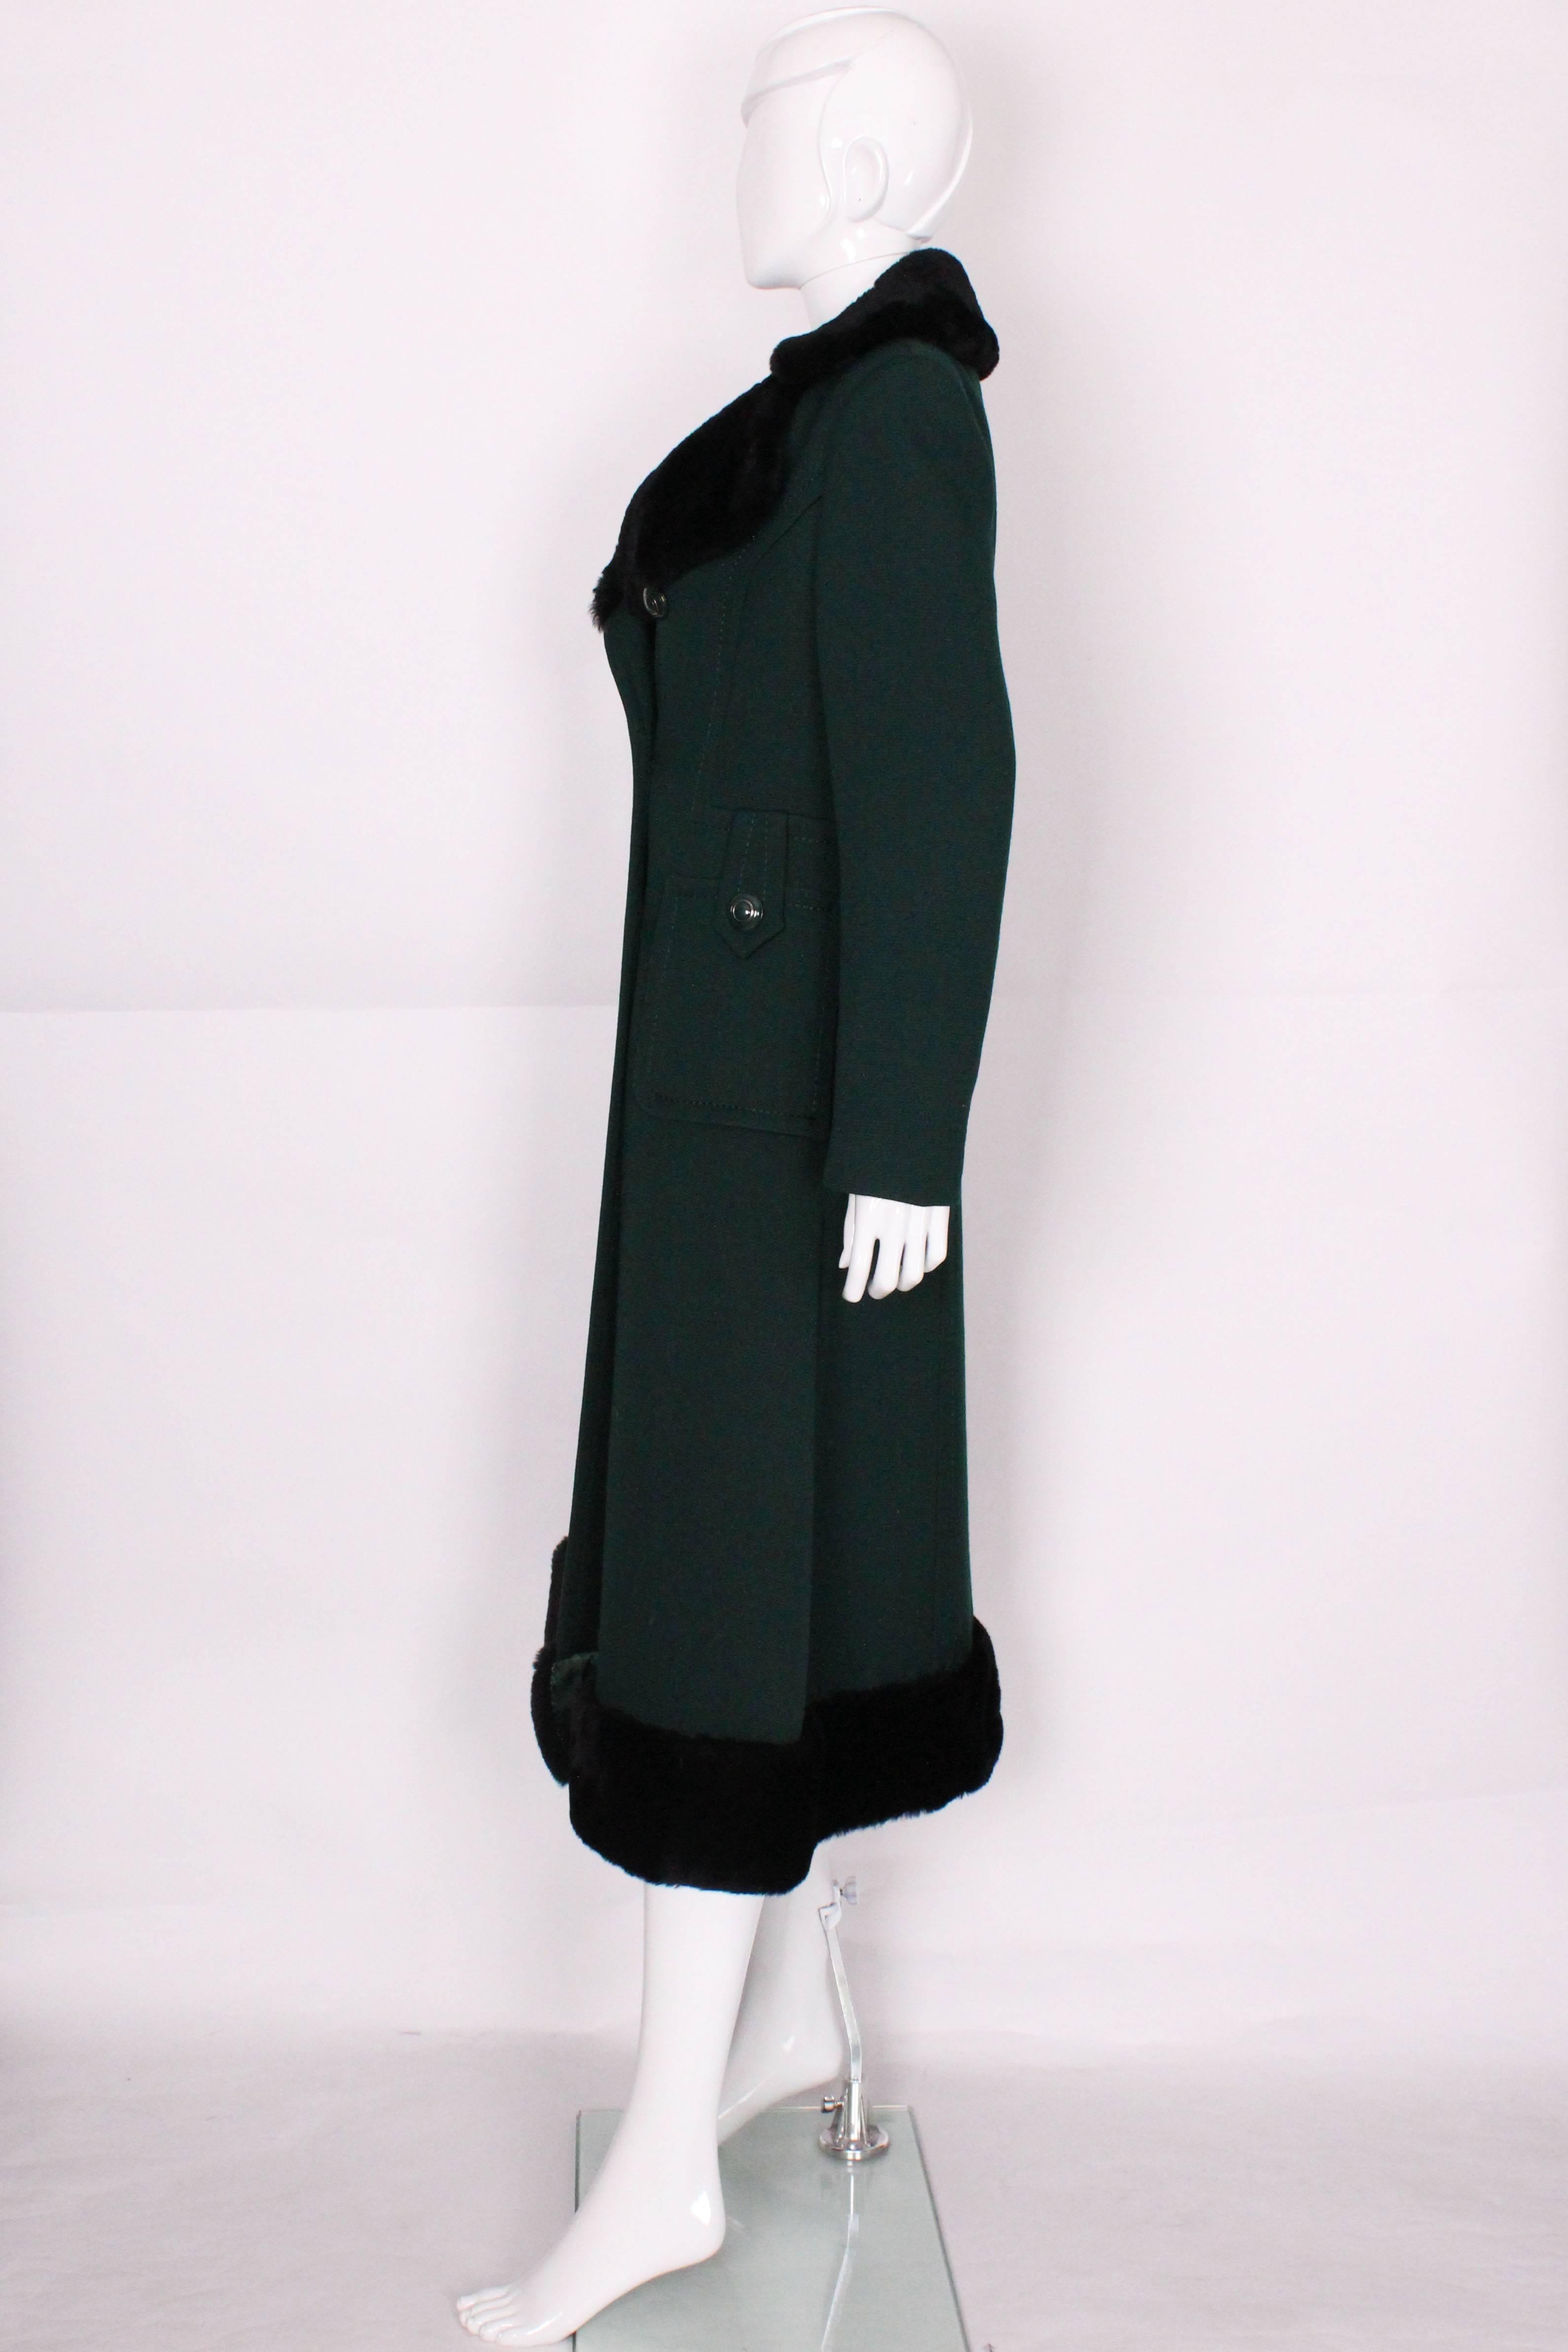 Black Mansfield for Harrods 1970s Dark Green Wool & Faux Fur Coat